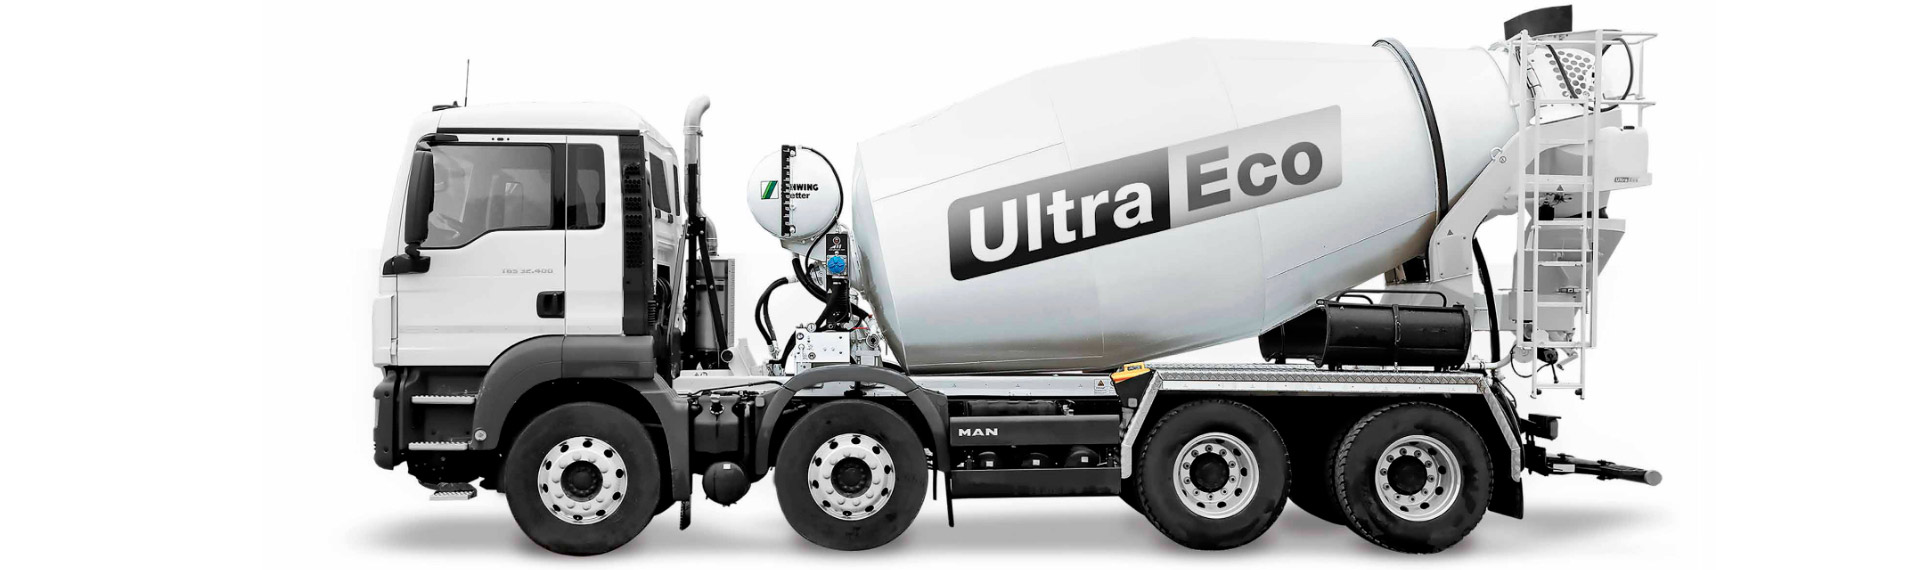 내마모성이 높은 Hardox® 내마모 강판으로 제작된 흑백 색상의 Ultra-Eco 콘크리트 믹서 트럭